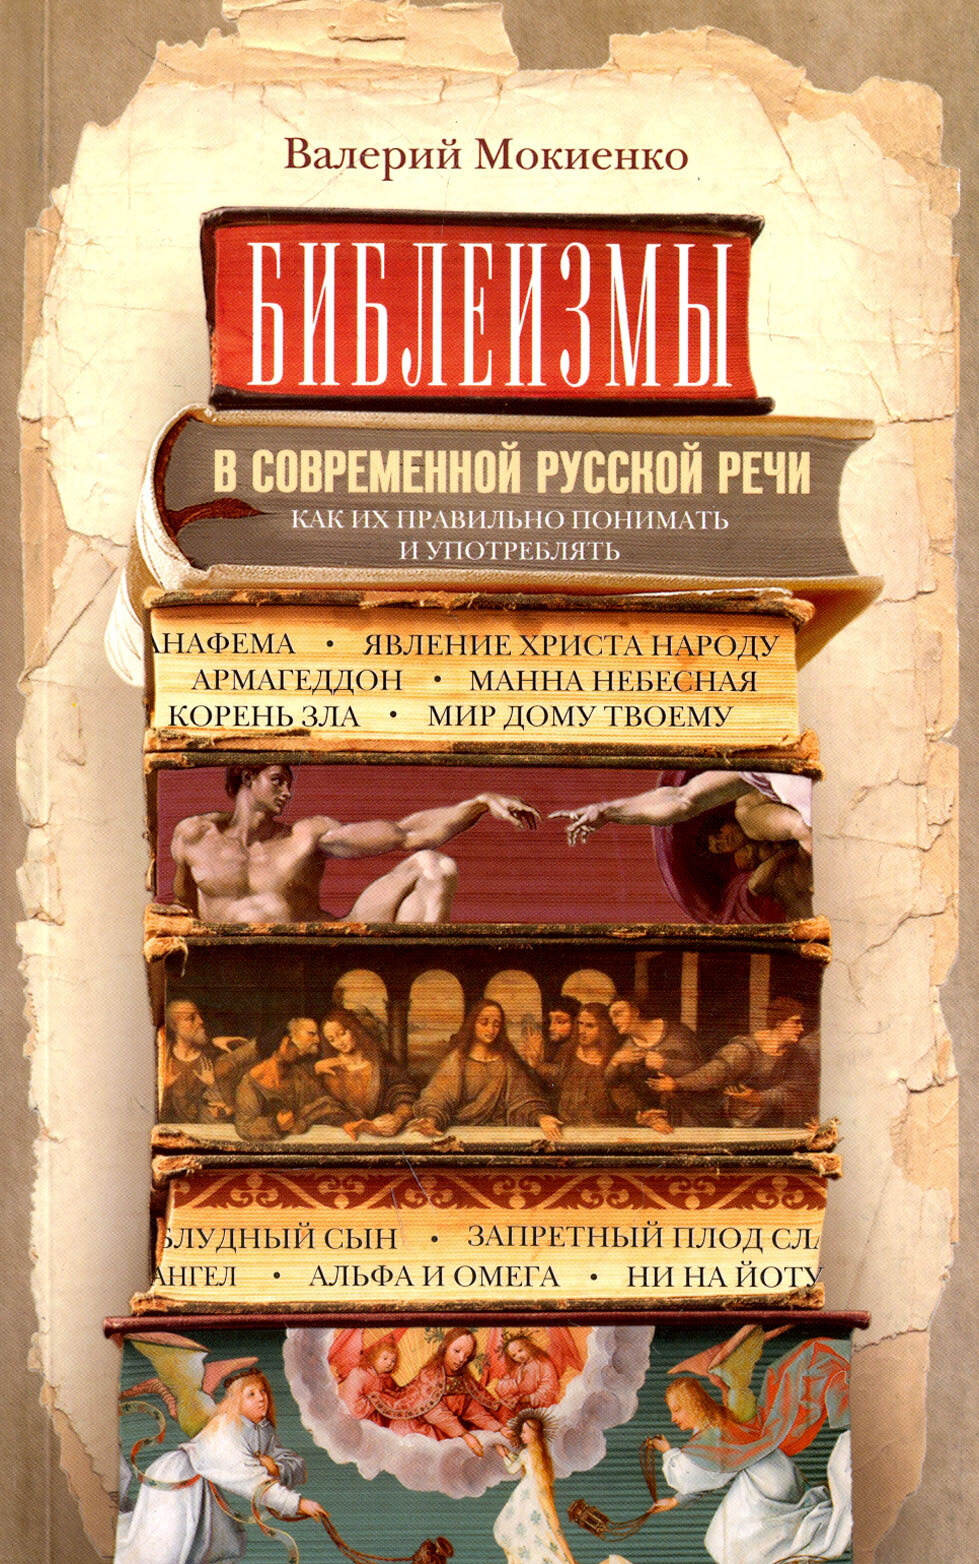 Библеизмы в современной русской речи - фото №2